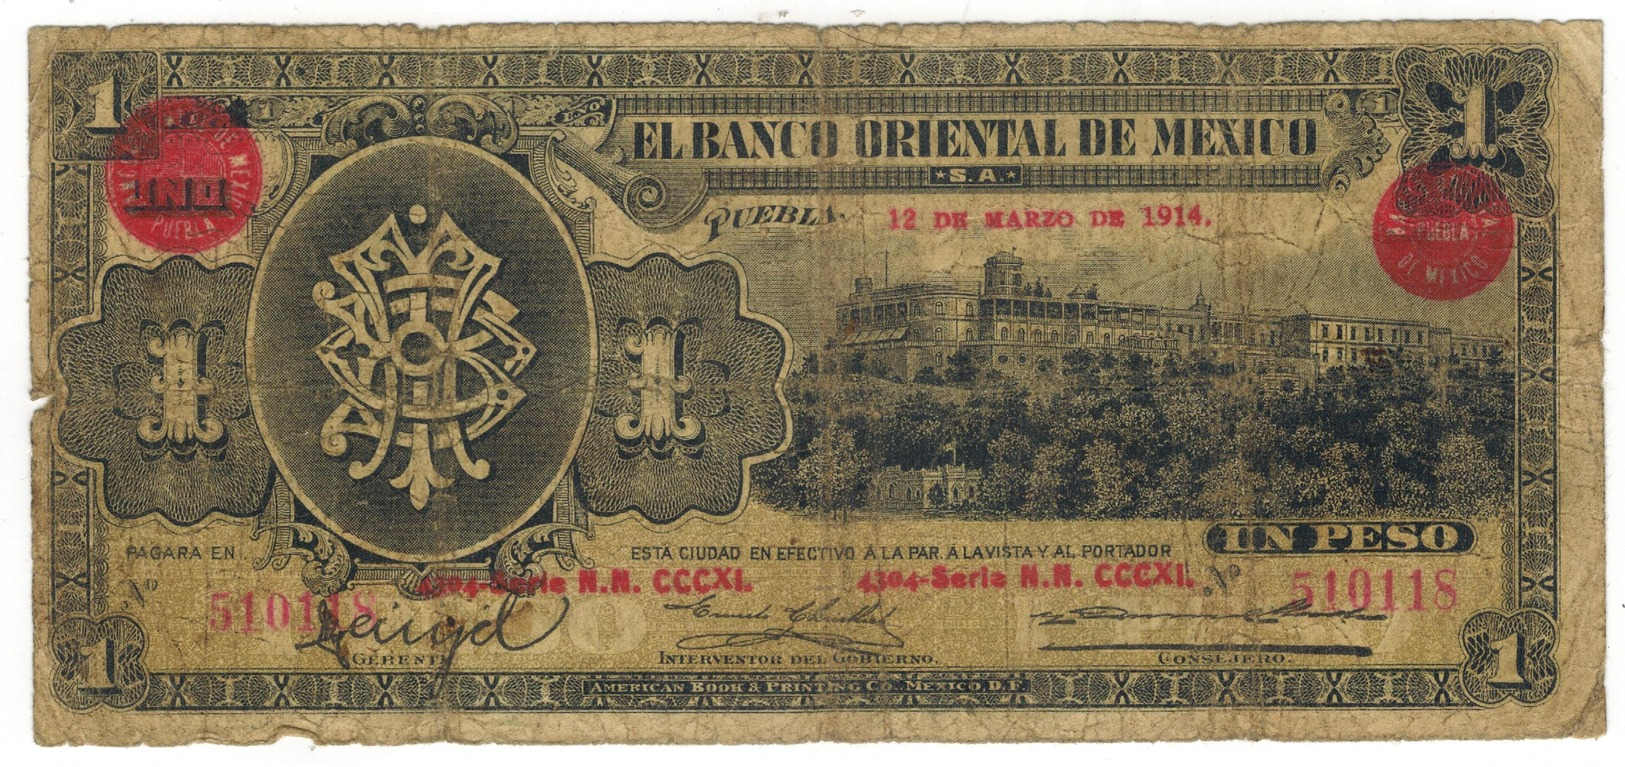 Mexico, 1 Peso , EL BANCO ORIENTAL DE MEXICO, 1914, Used, See Scan. - Mexique